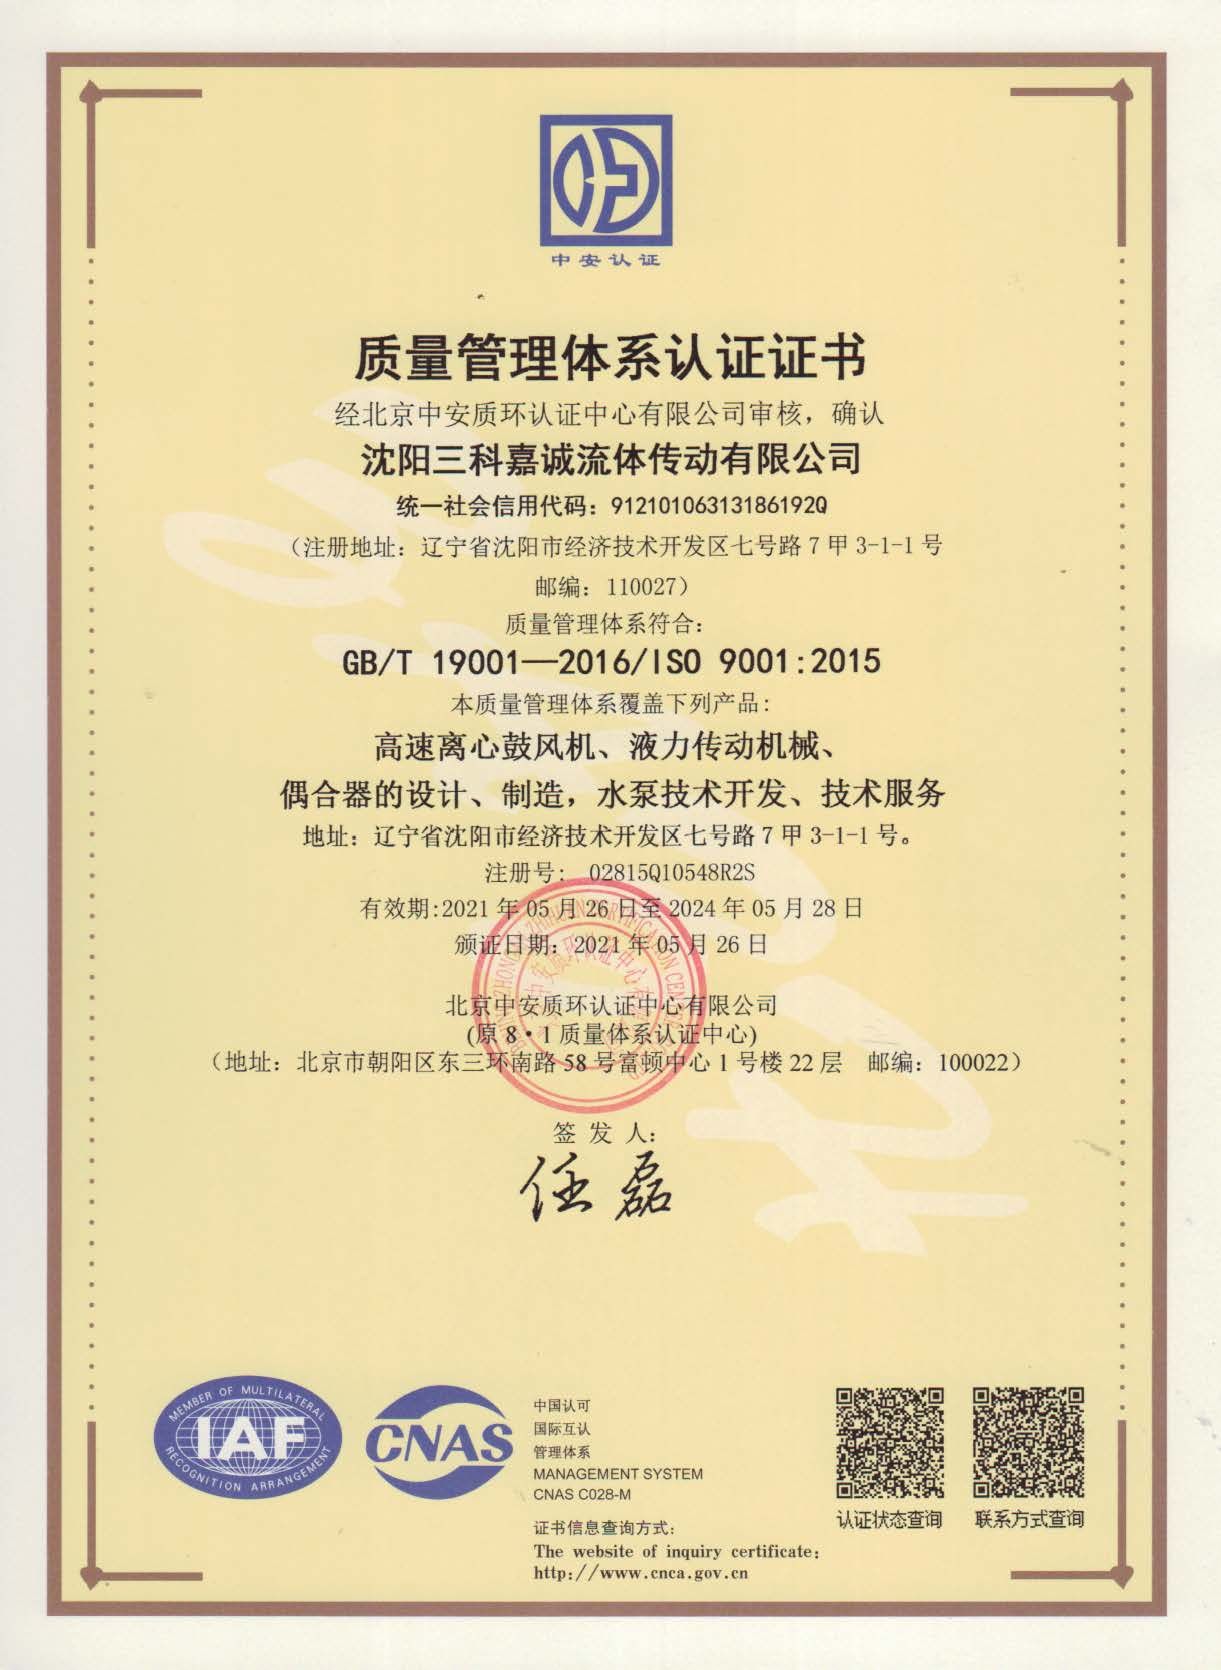 Certificat de certification du système de gestion de la qualité